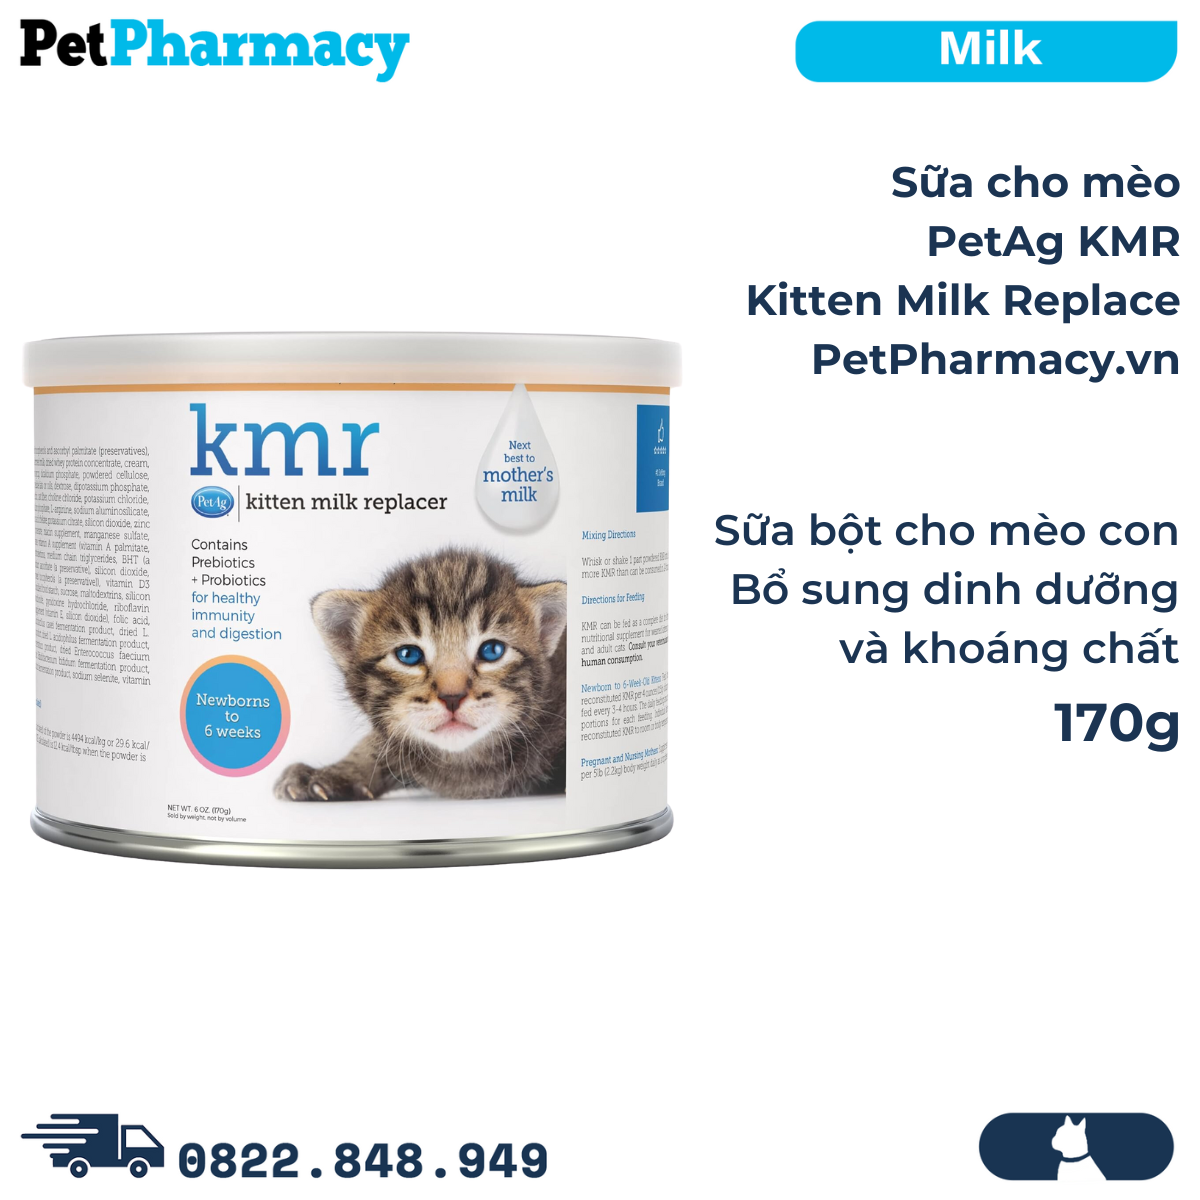  Sữa cho mèo PetAg KMR Kitten Milk Replacer 170g - Sữa bột cho mèo con, bổ sung dinh dưỡng và khoáng chất nhập 